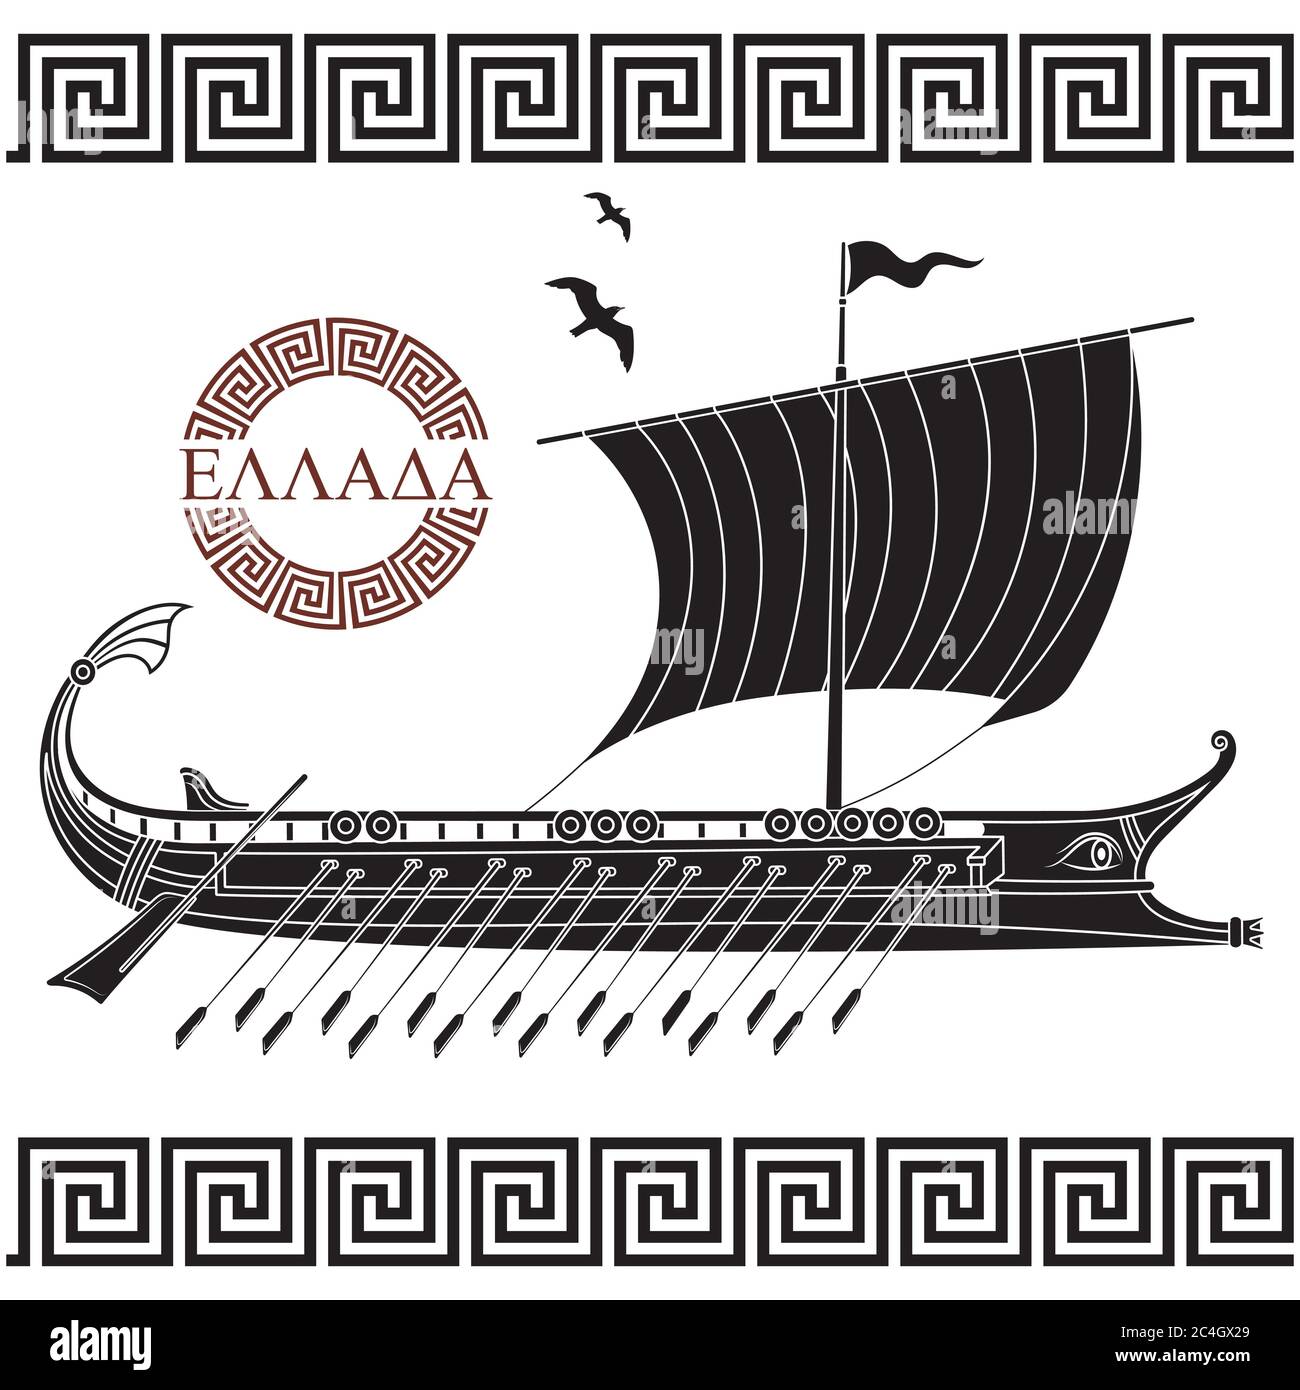 Ancienne conception hellénique, ancienne galette de voilier grecque - triera et ornement grec serpentent Illustration de Vecteur